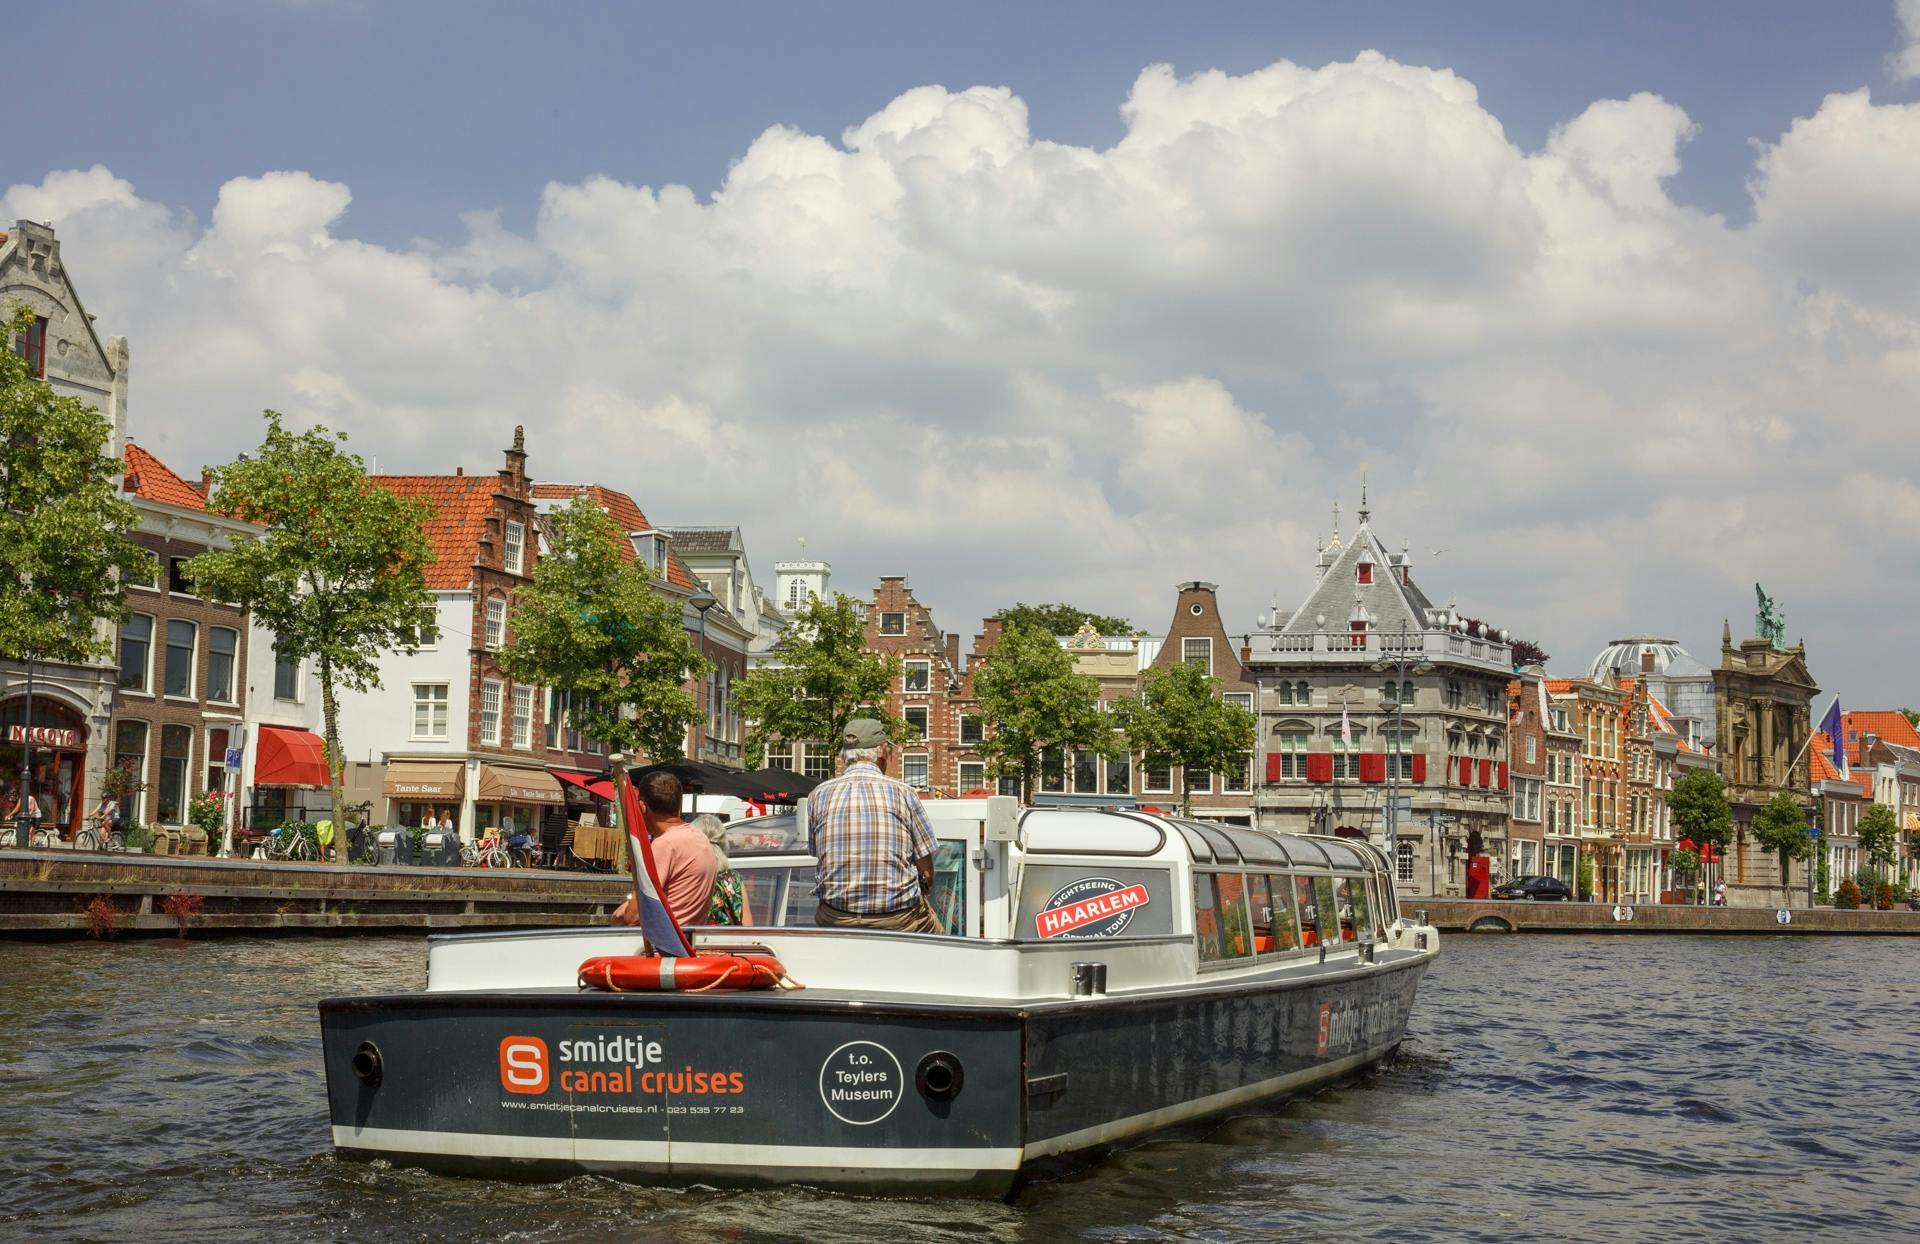 Rejs po kanałach przez historyczne centrum Haarlemu